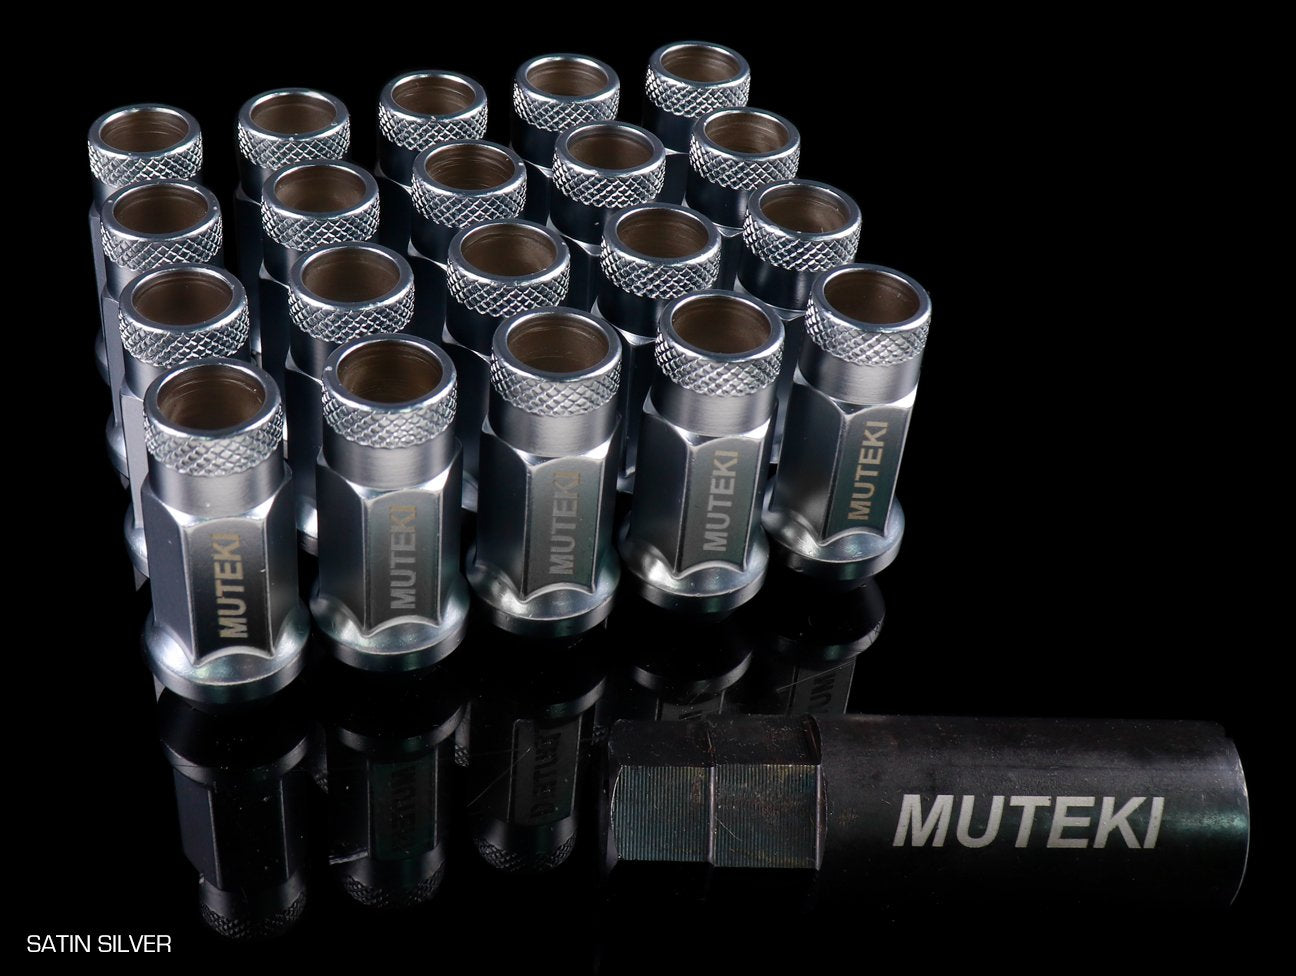 Muteki SR48 Lug Nuts